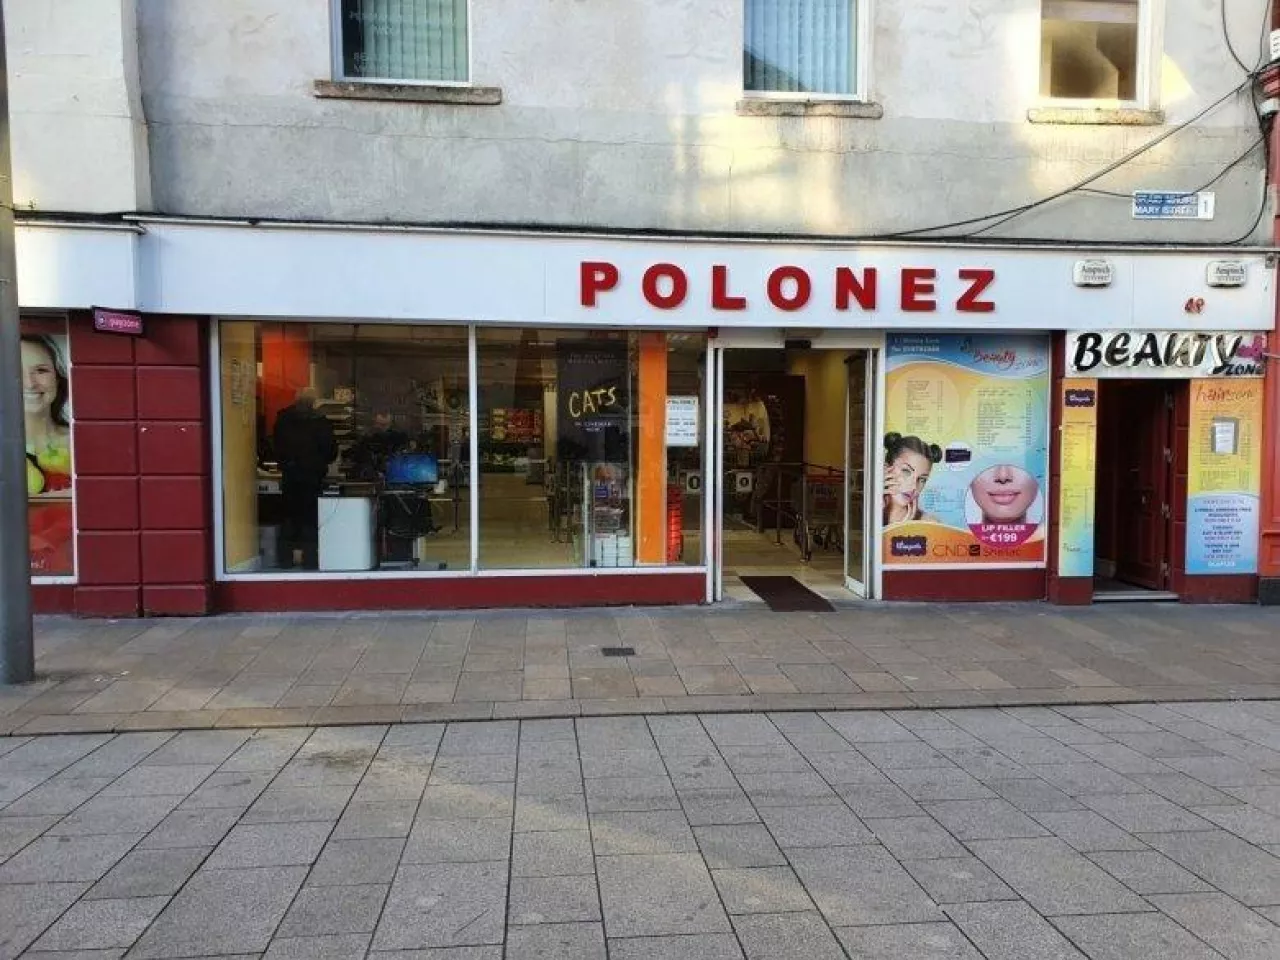 Sieć Polonez rozwija sklepy spożywcze w Irlandii - 2